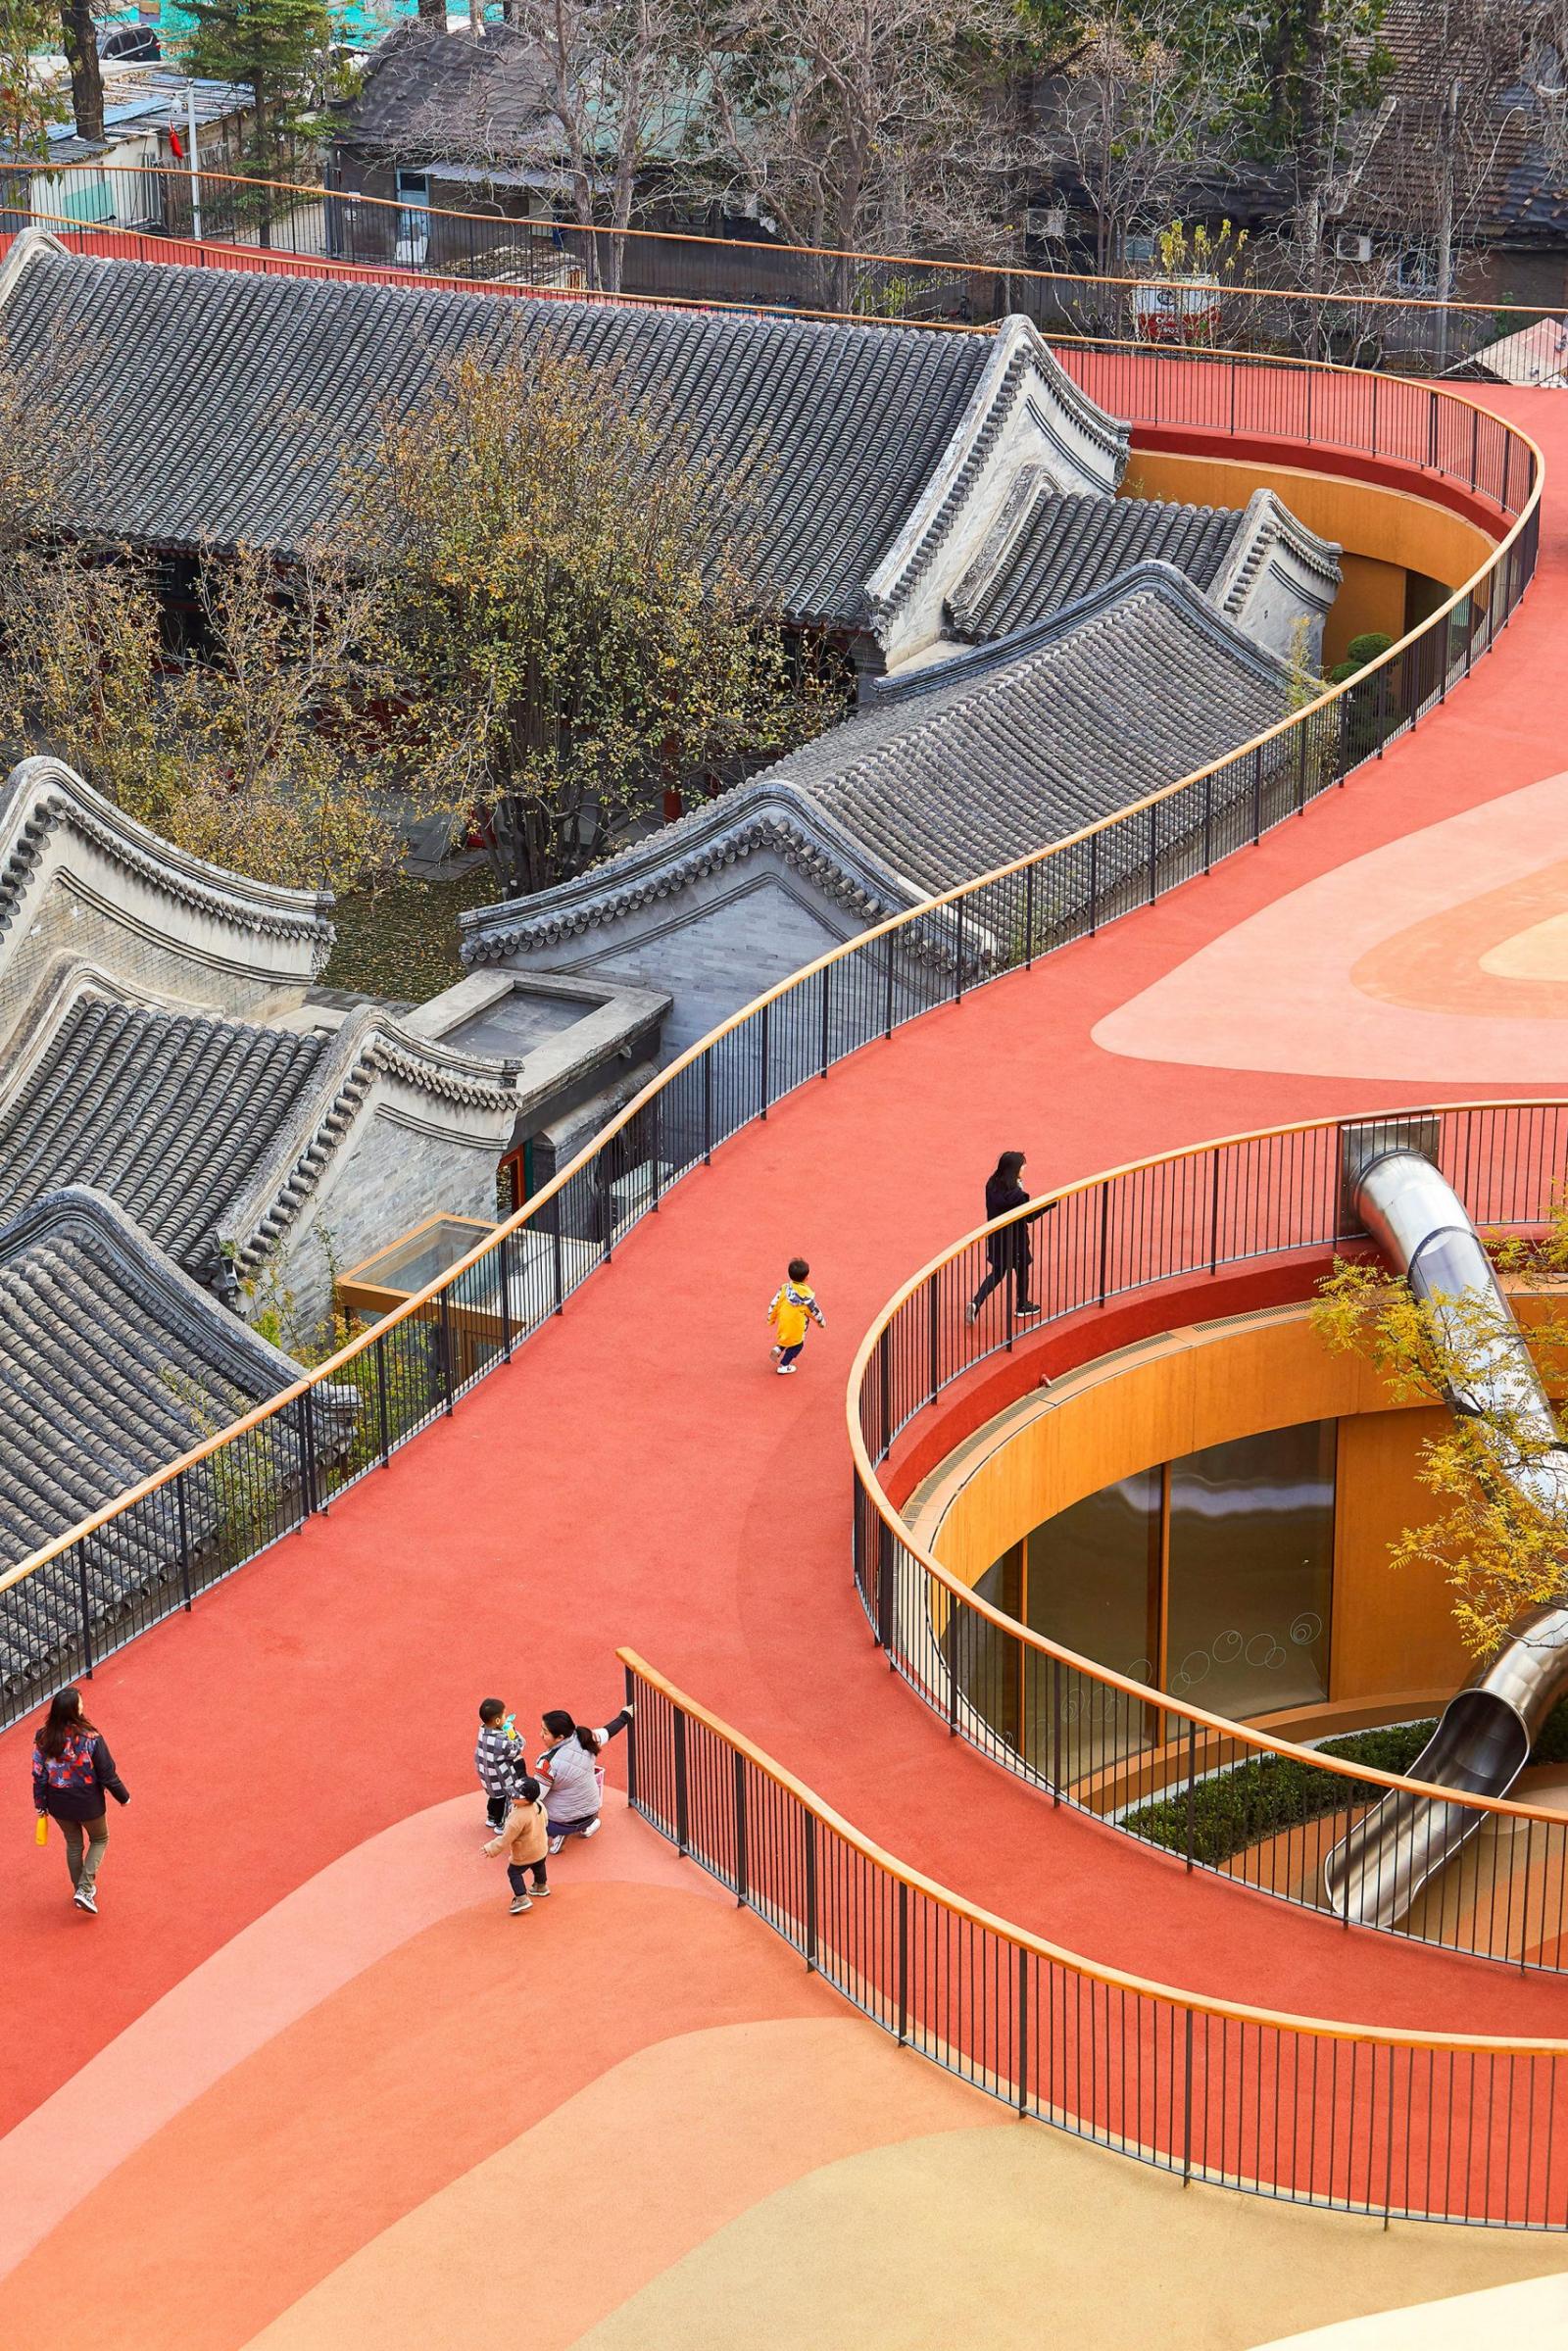 hình ảnh sân trong sơn màu đỏ, vàng, be của trường mẫu giáo ở Trung Quốc